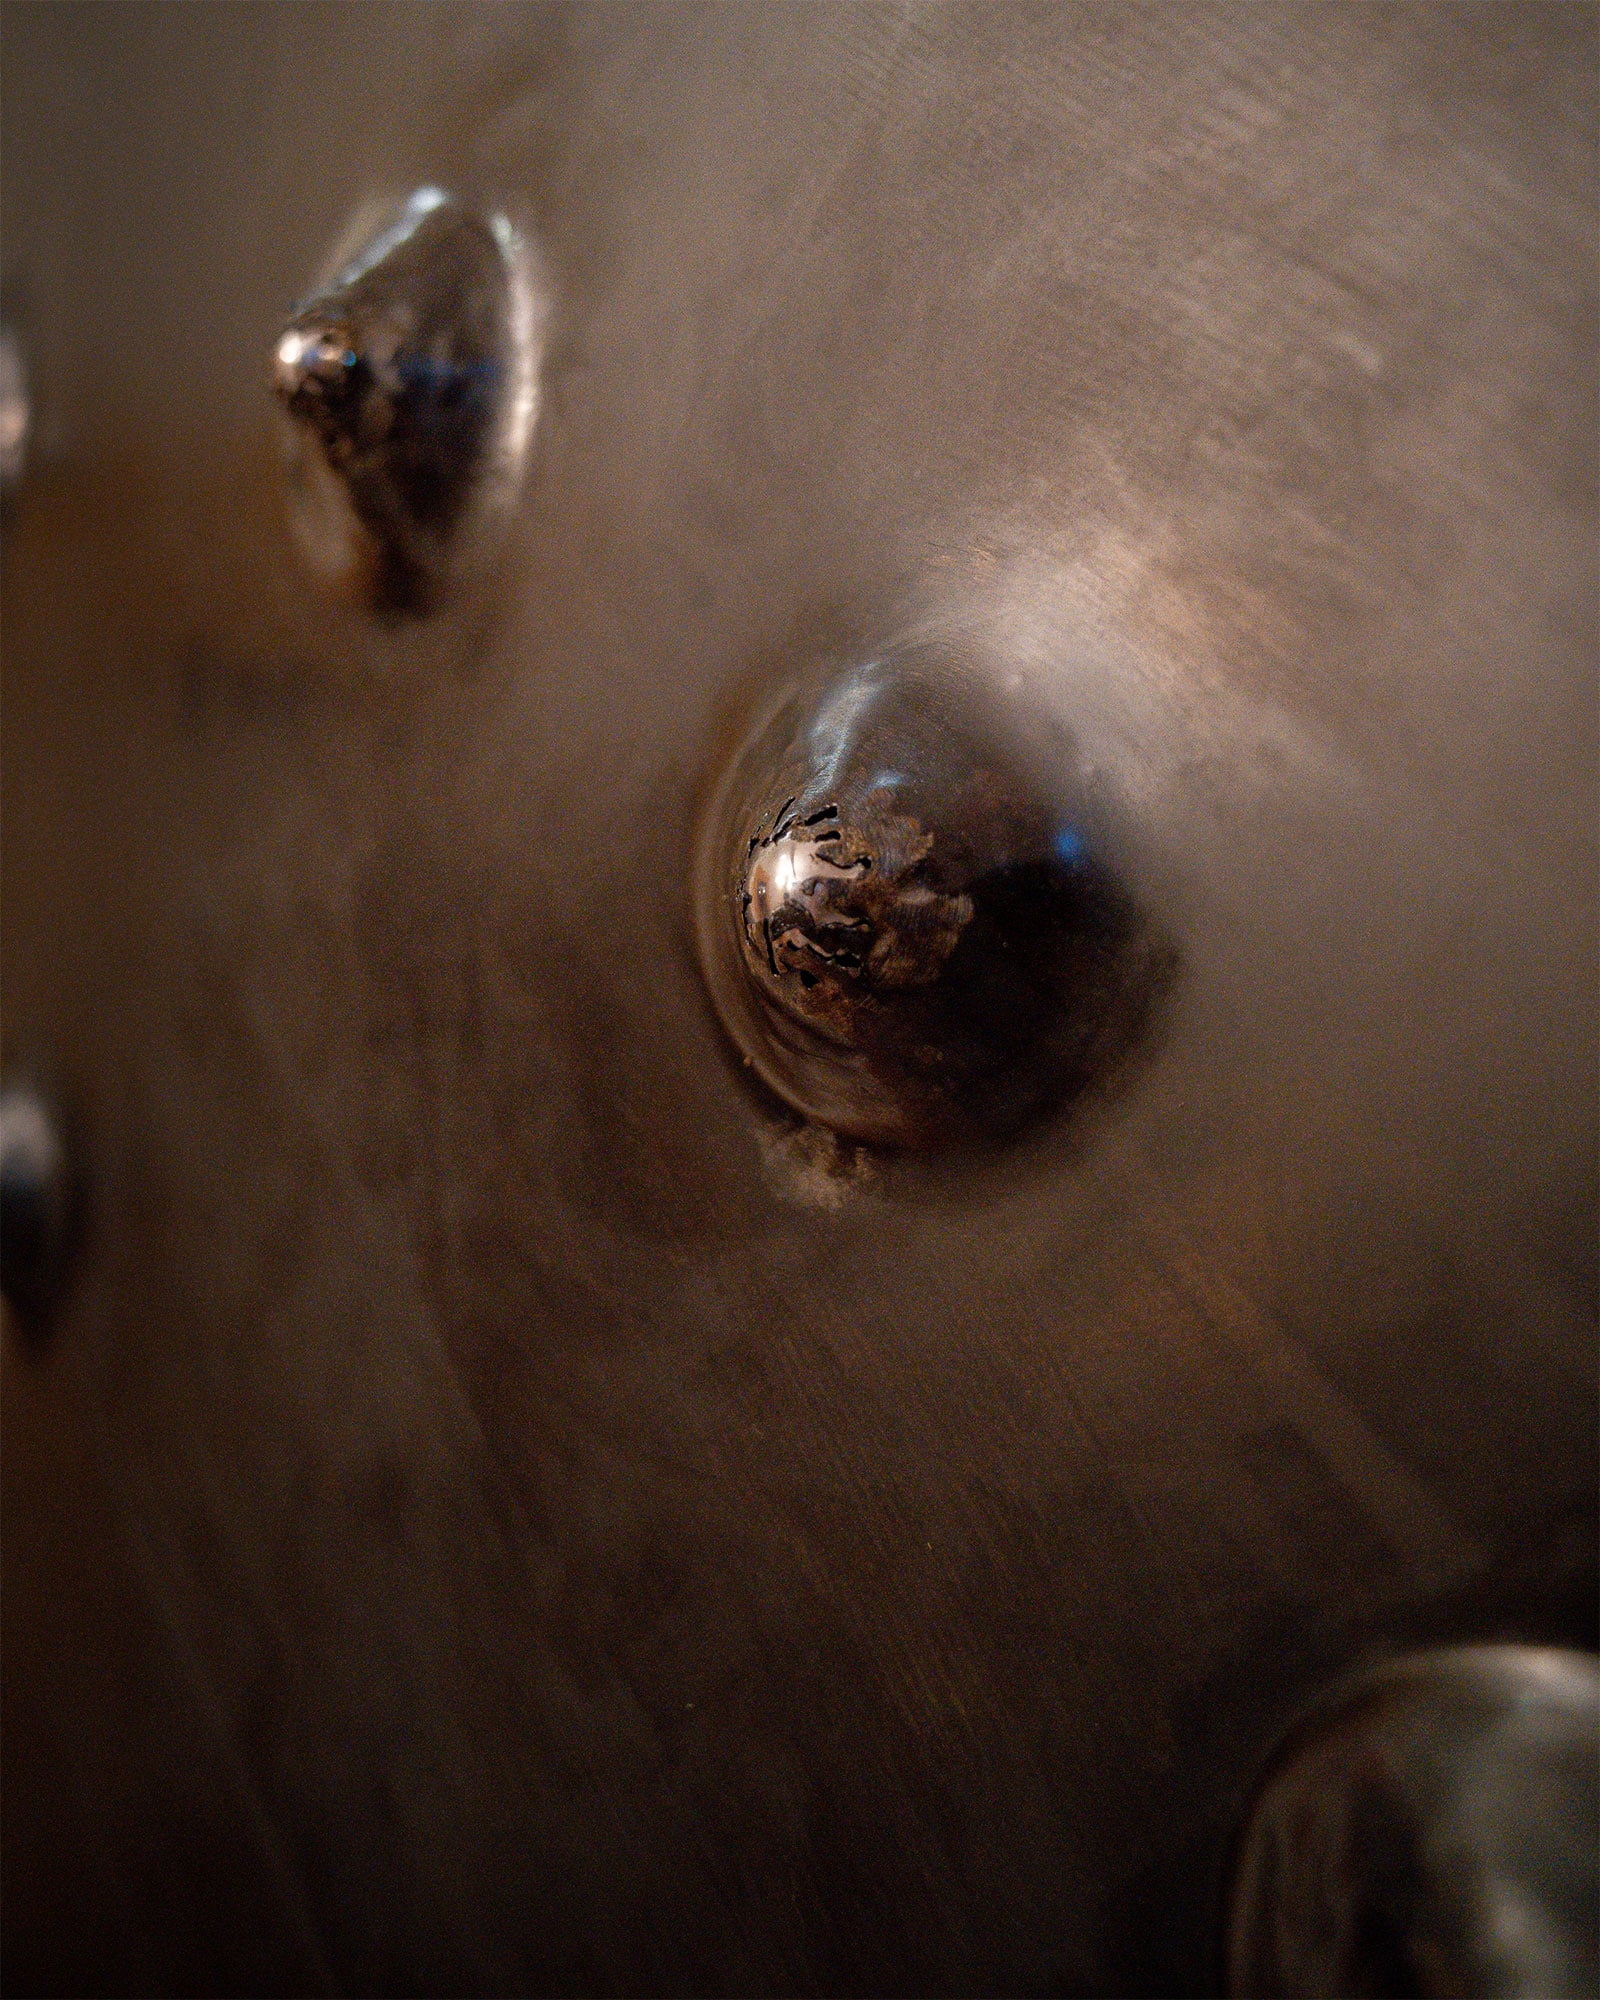 Stahlbild bzw. Bild aus Metall mit dem Namen "Stahlbild #5" aus der Reihe Kugeln von Daniel Springer. Kugeln in Silber, Bilderrahmen in Edelstahl. Nahaufnahme